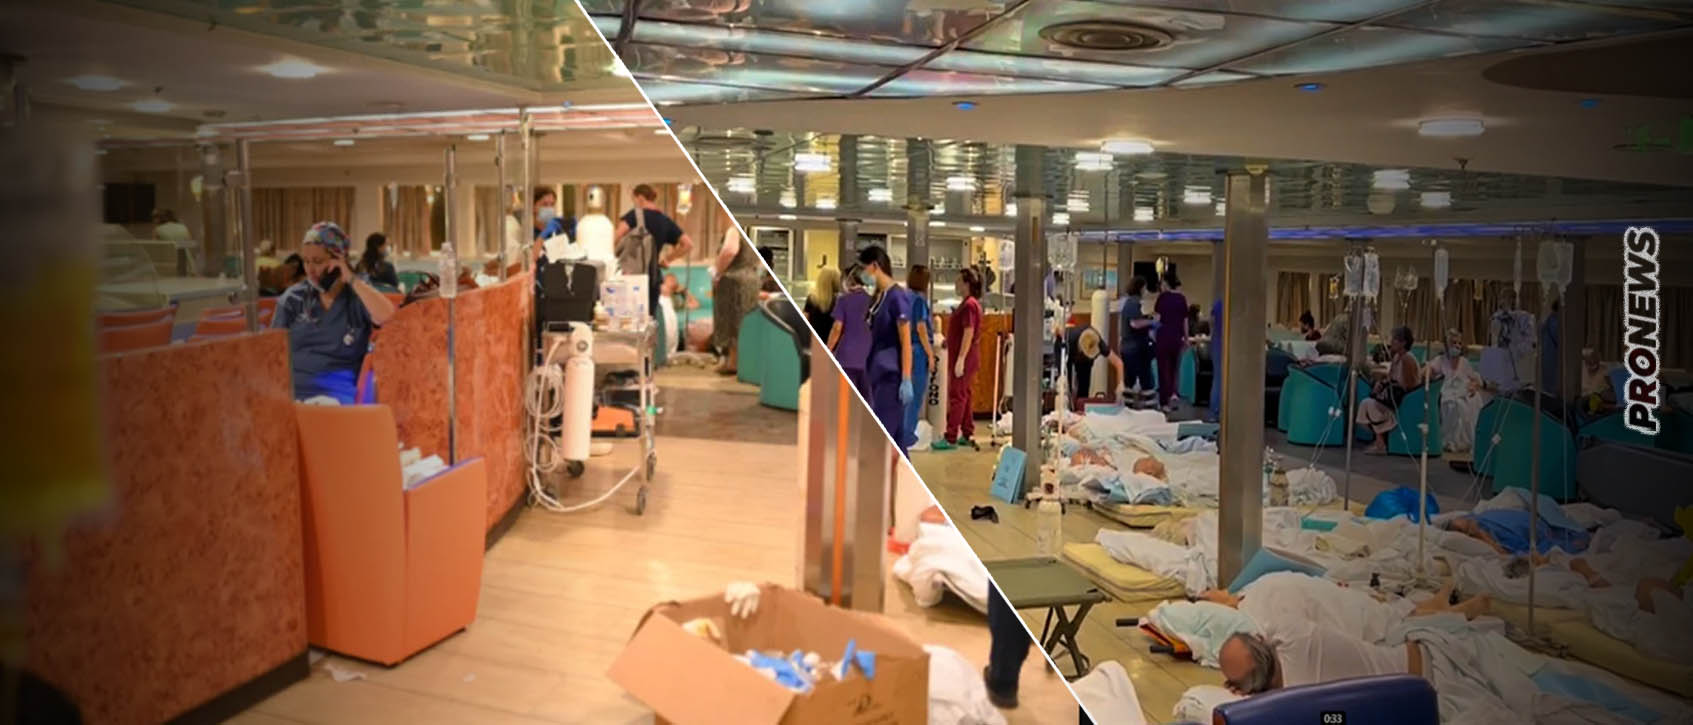 Αλεξανδρούπολη: Σε ferry boat στο λιμάνι μεταφέρονται οι ασθενείς του νοσοκομείου που εκκενώνεται λόγω της φωτιάς (βίντεο)